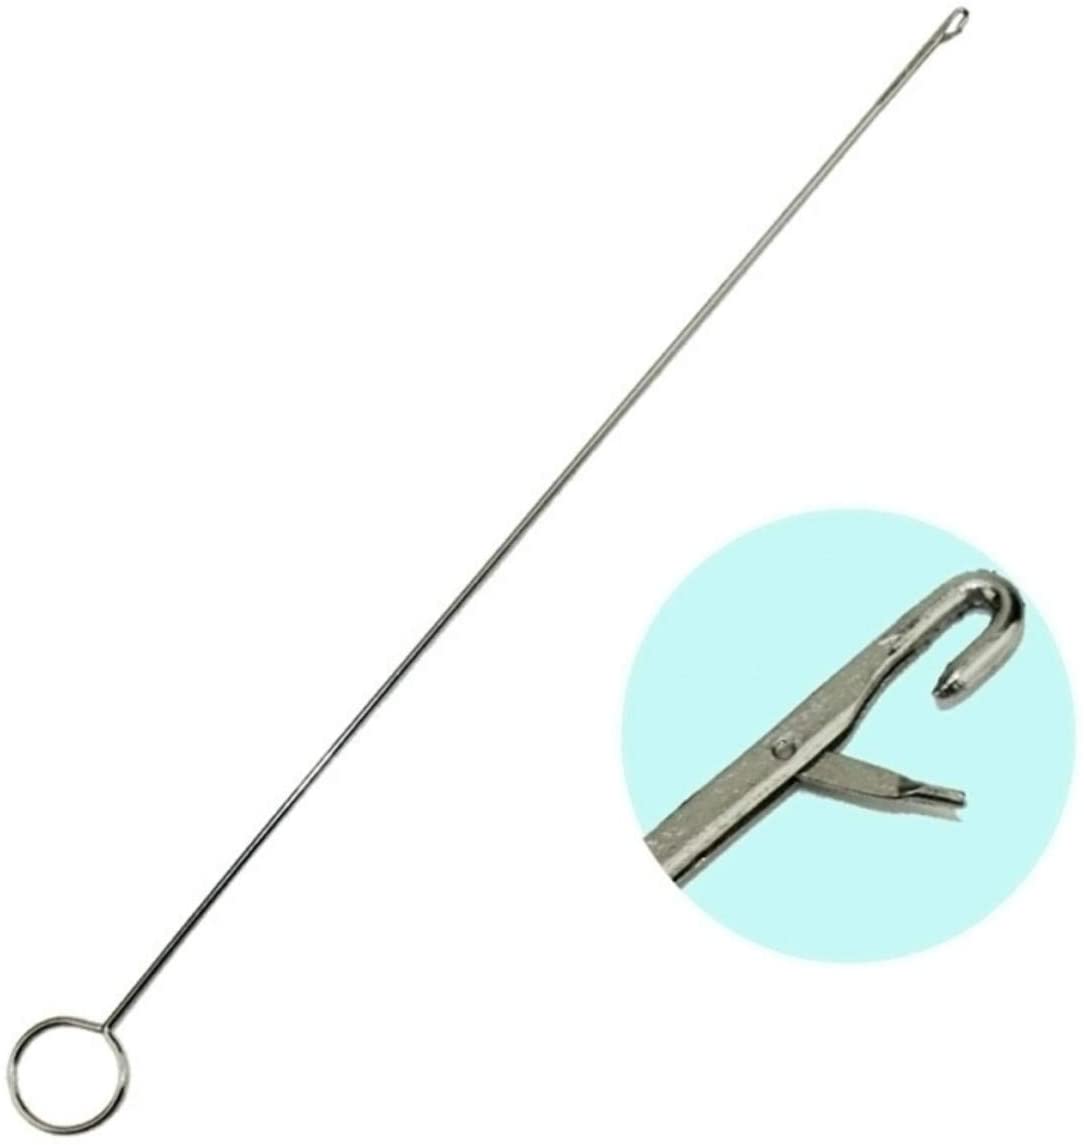 Sewing Loop Turner Hook Stainless Steel Loop Turner Long Short